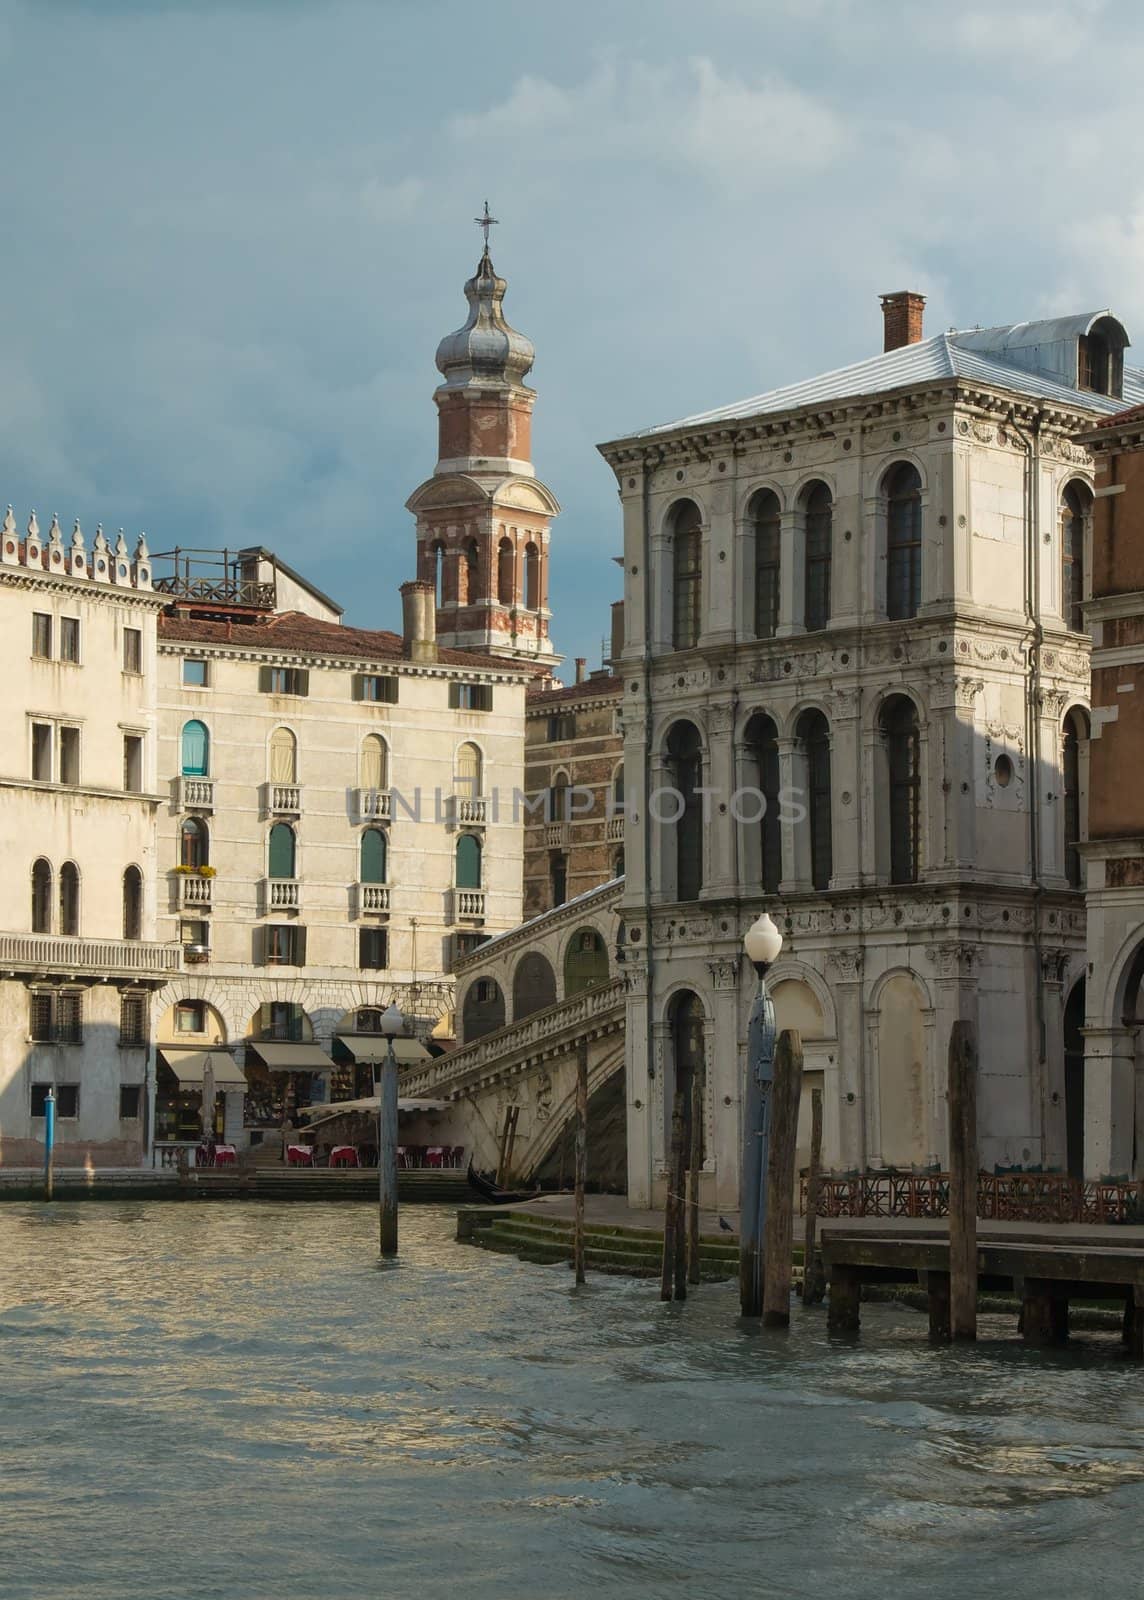 The Grand Canal near the Rialto Bridge in Venice